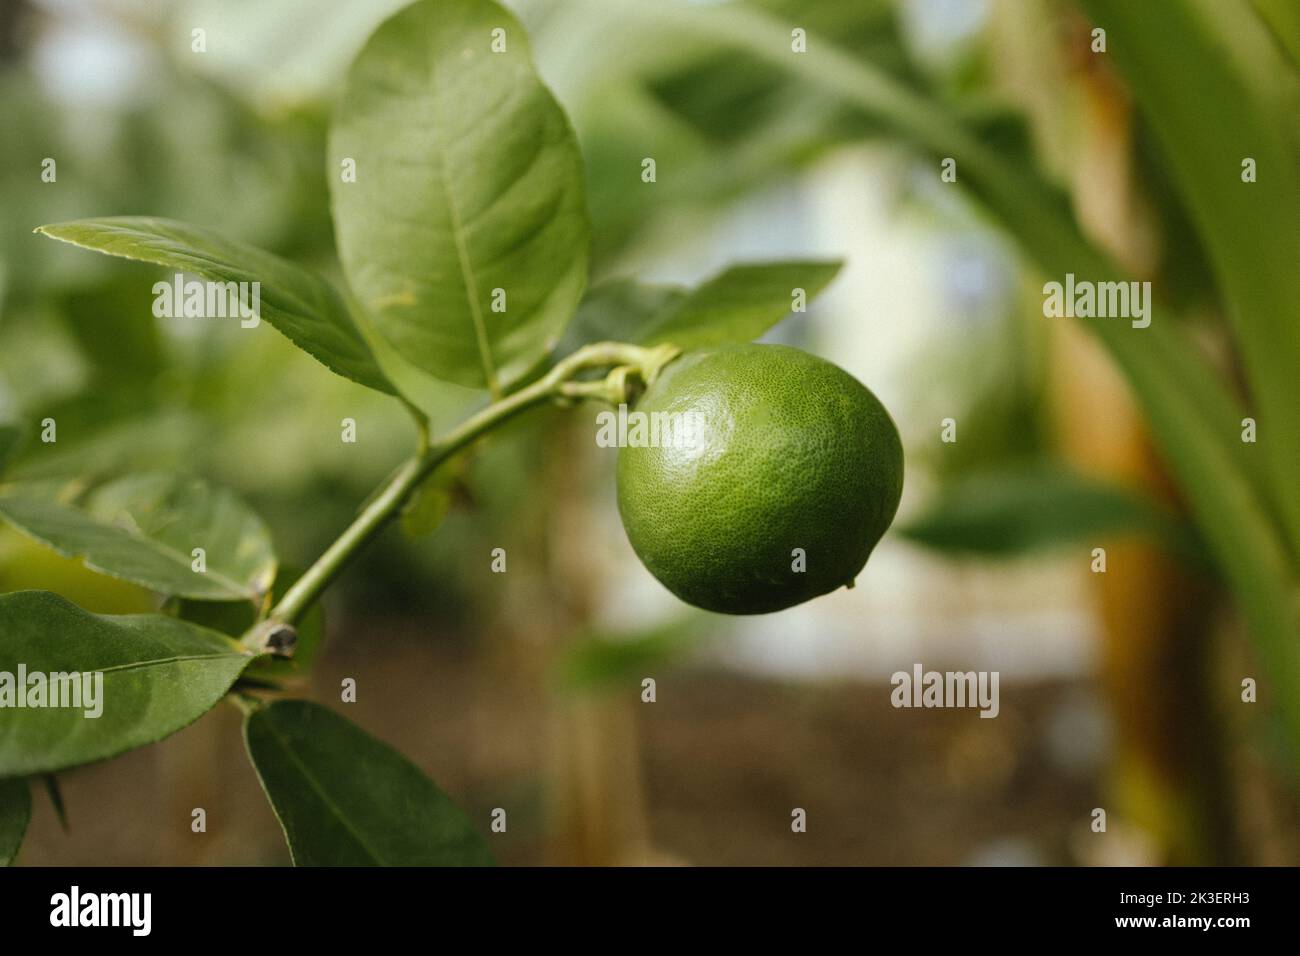 Lime verde agrumi limone e foglie verdi in giardino. Limone di agrume cresce su un ramo di albero, primo piano. Piante decorative di limoni di agrumi casa Foto Stock